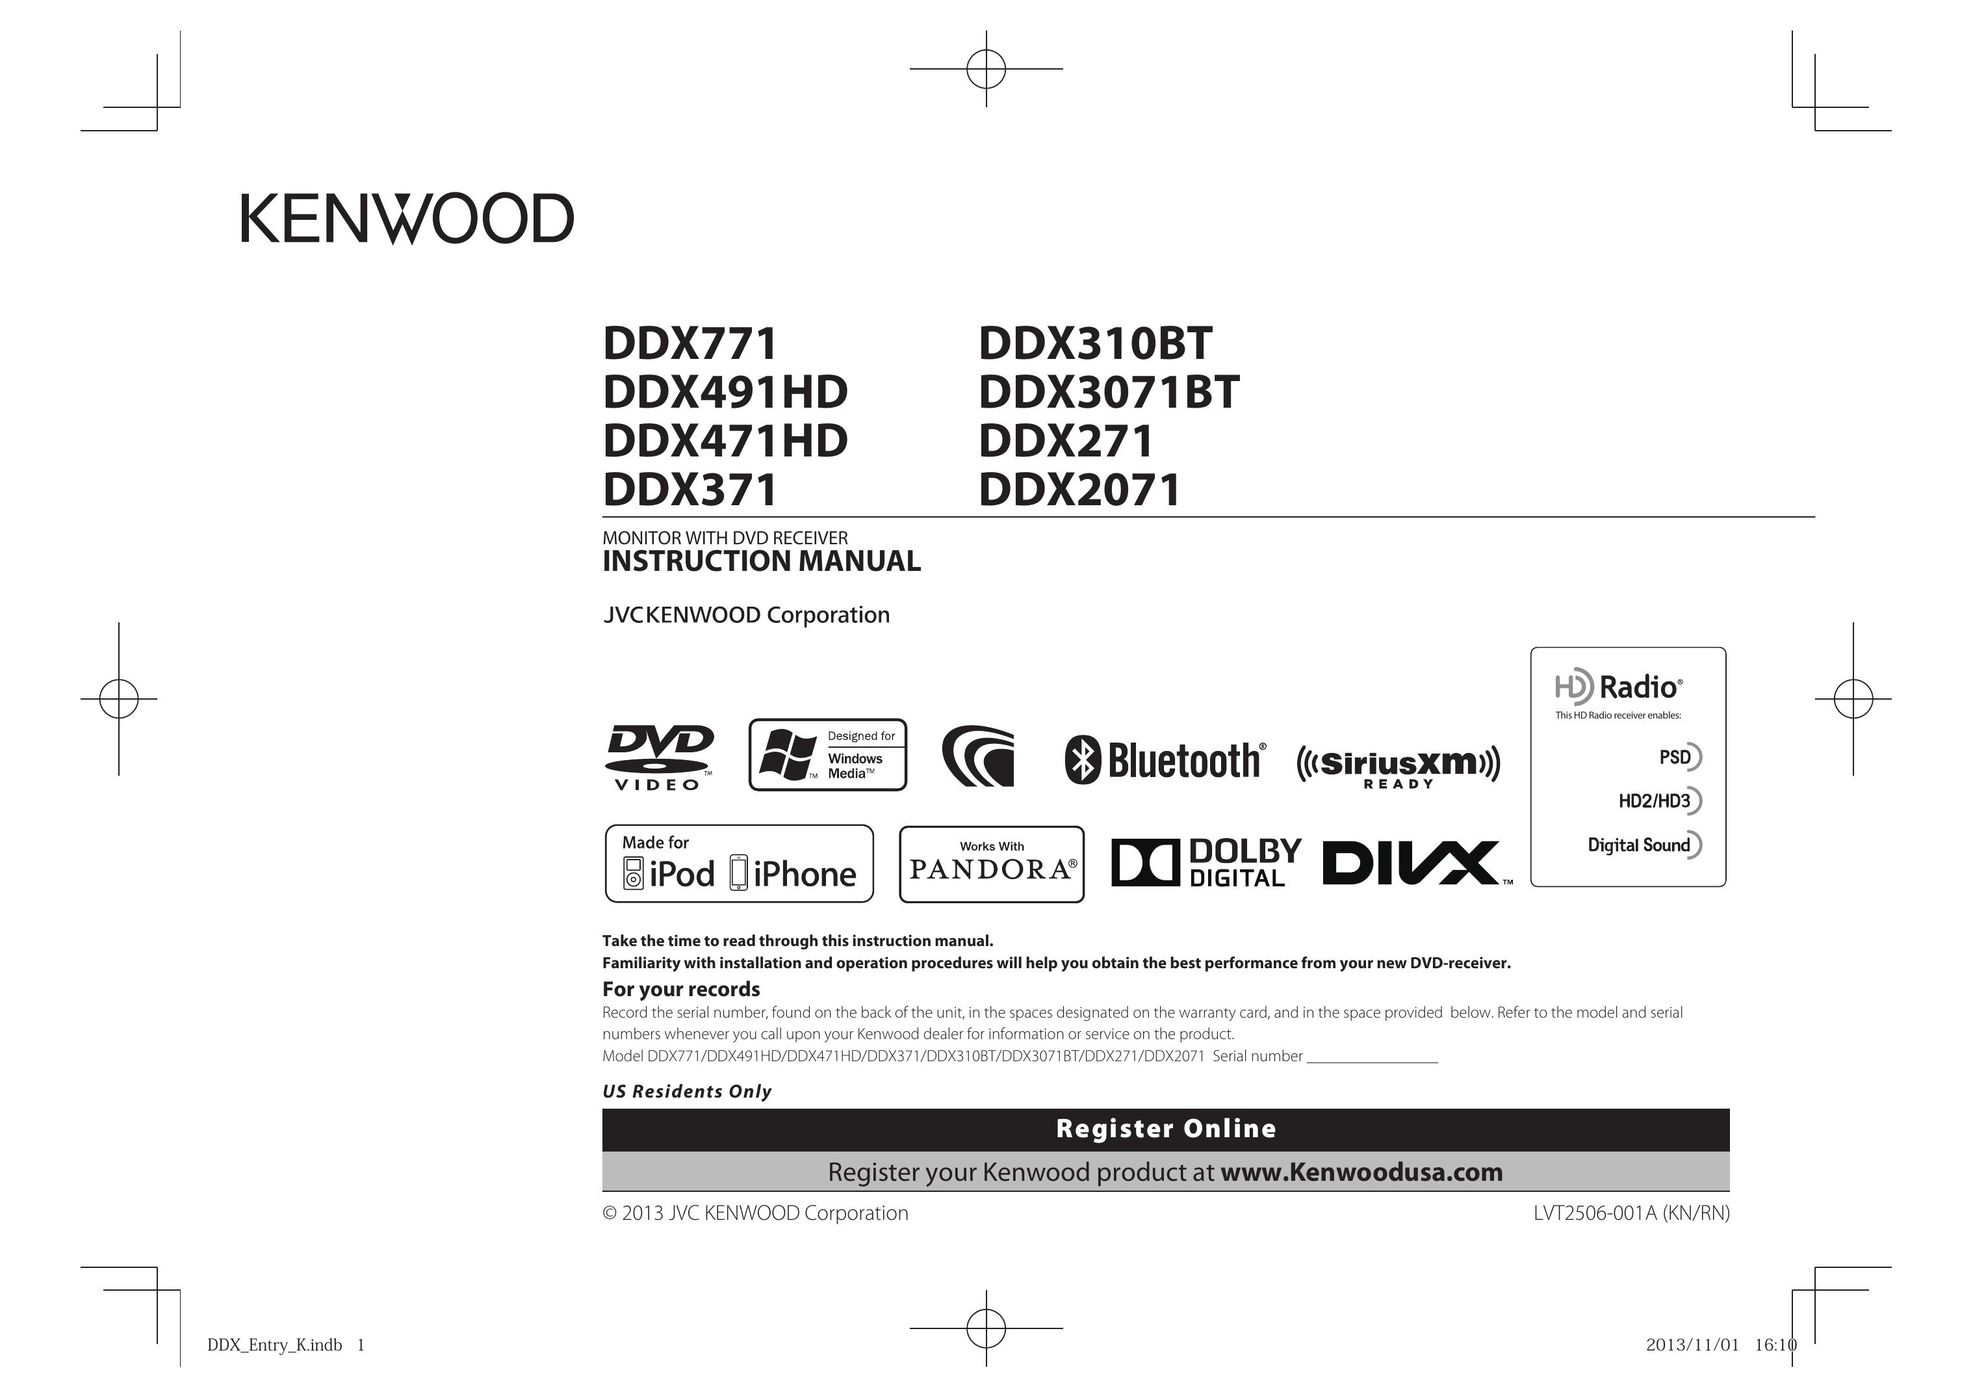 Kenwood DDX310BT Car Video System User Manual